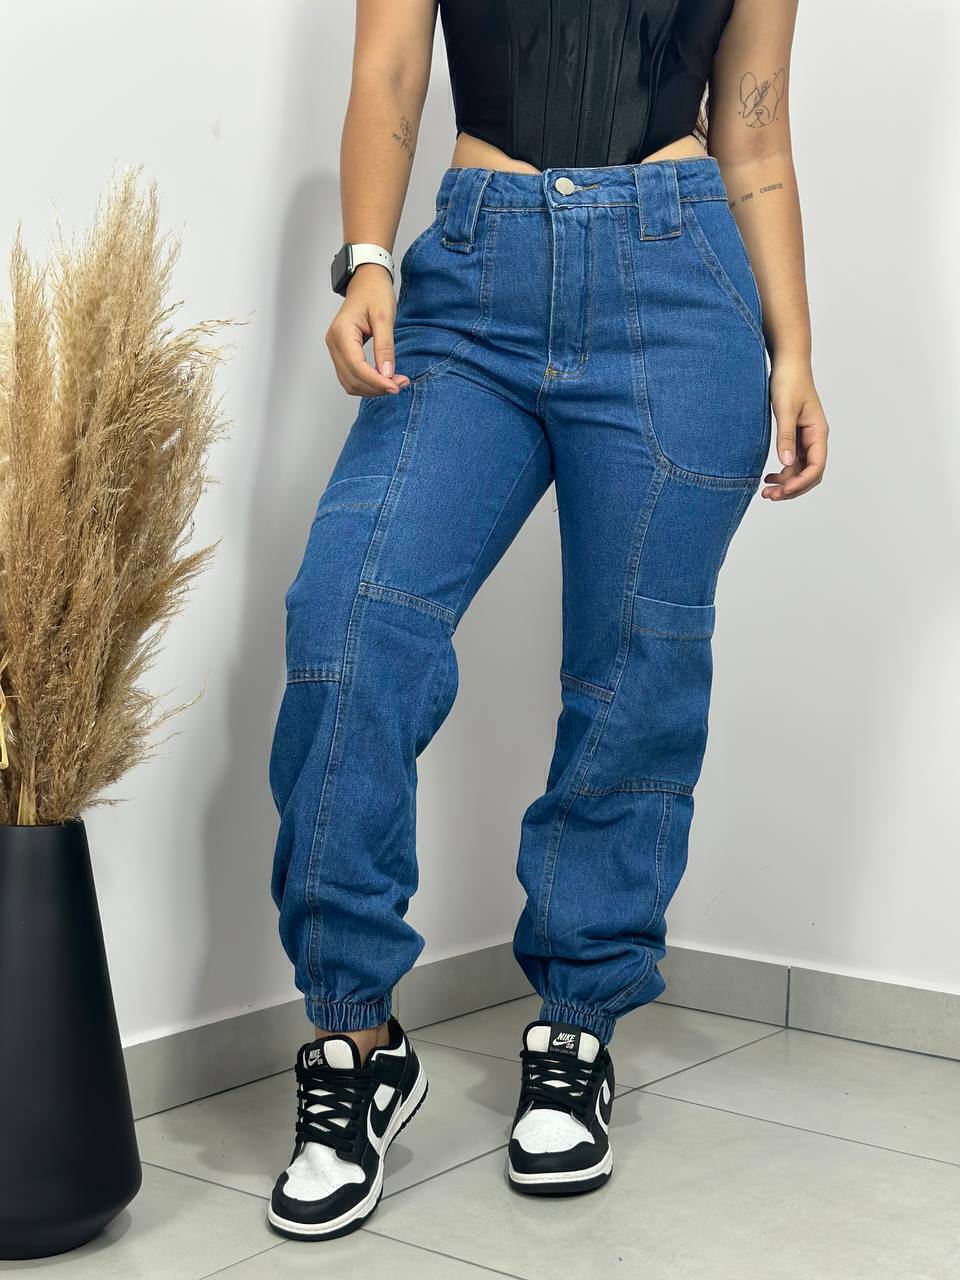 Calça Jogger Jeans - Comprar em STEFANY.M